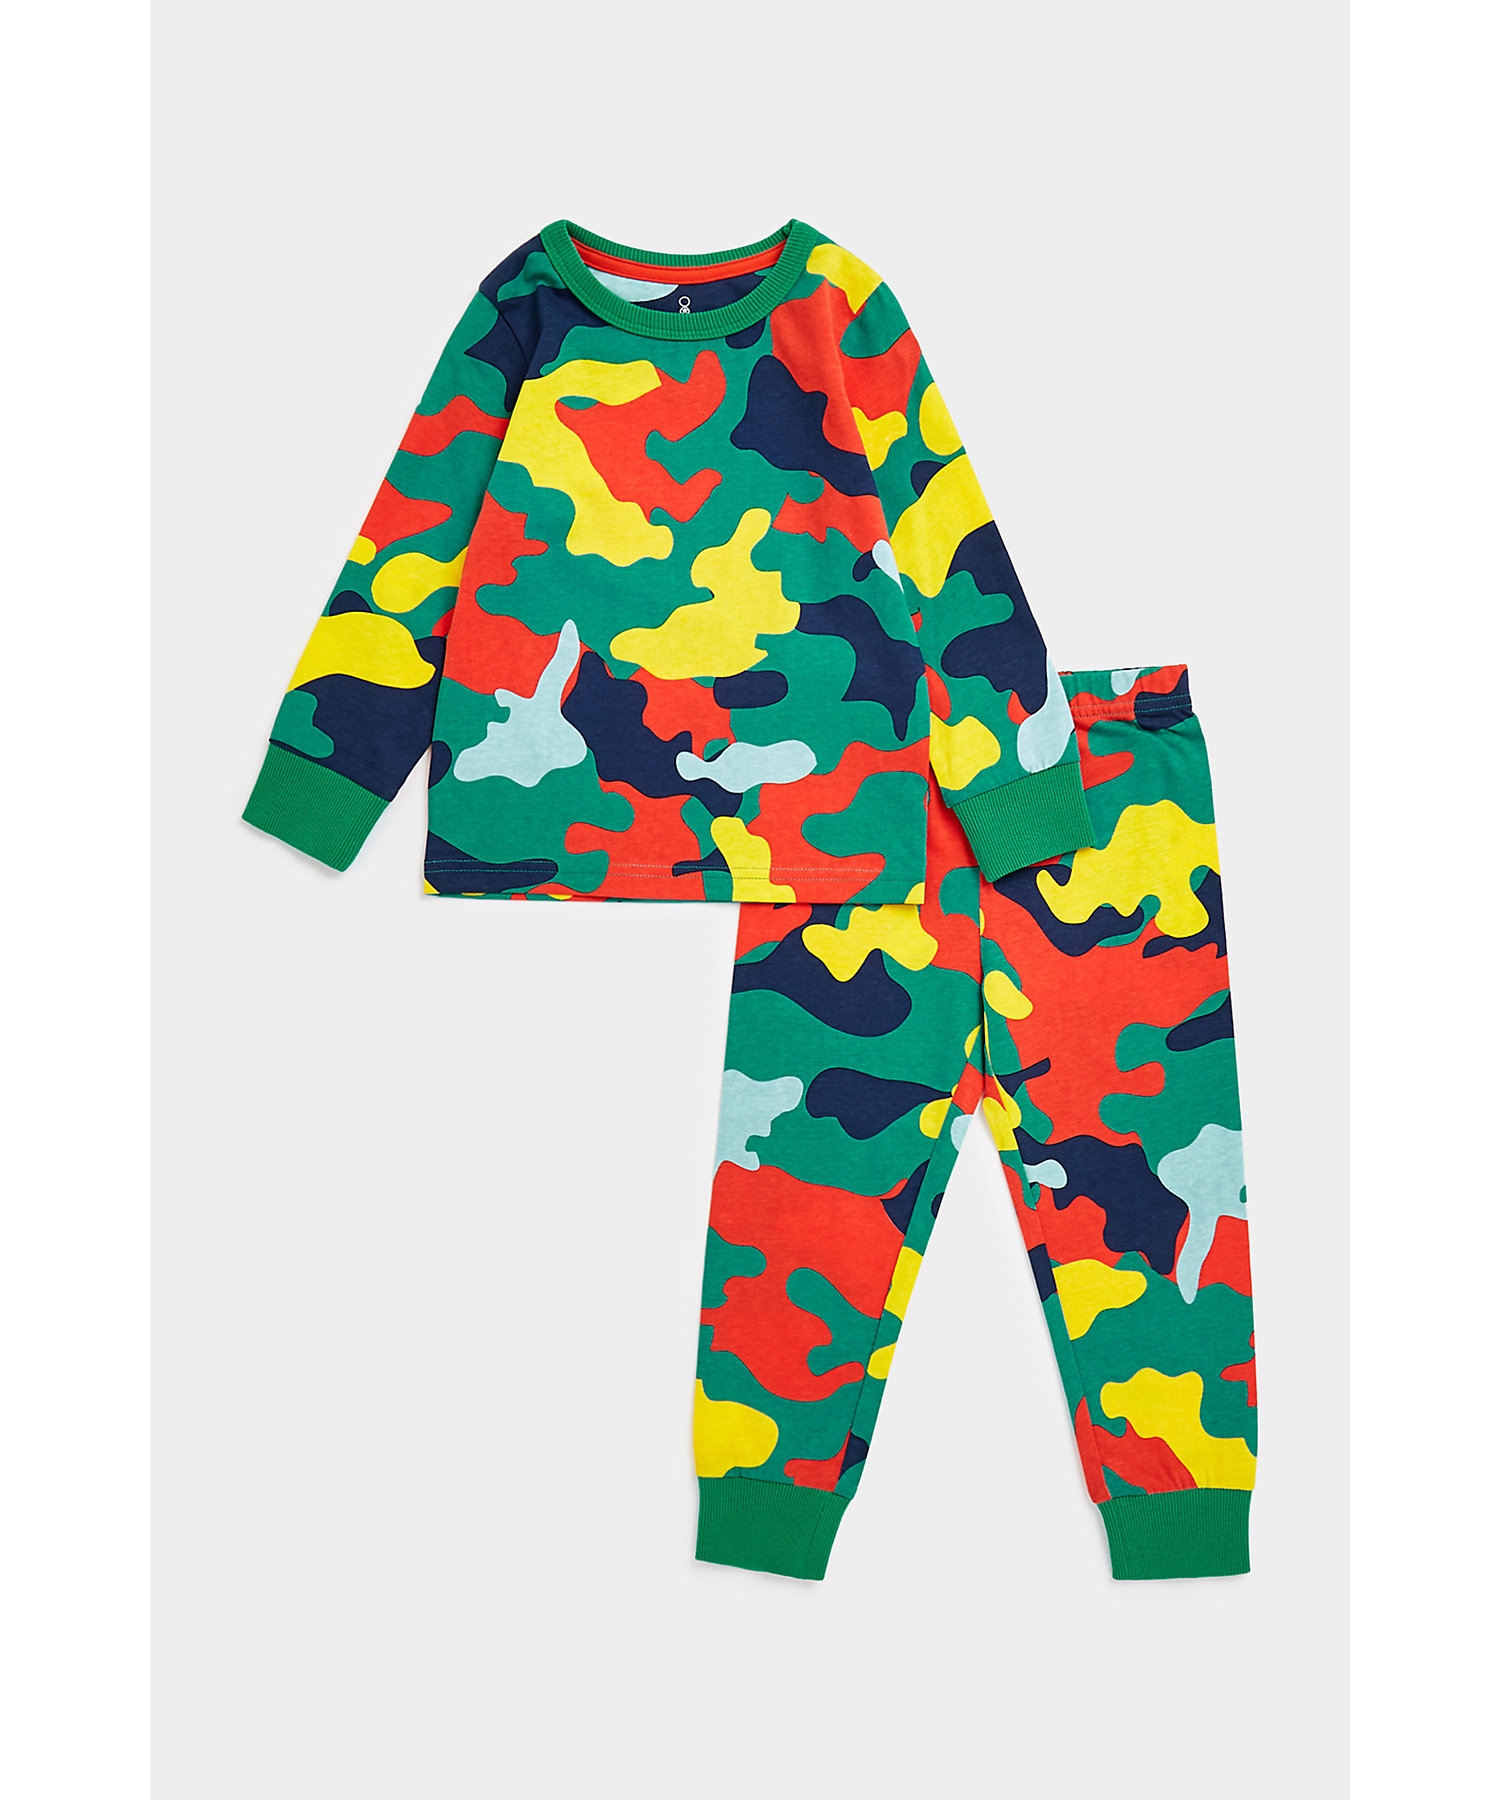 Boys Full Sleeves Pyjama Set All Over Print-Multicolor